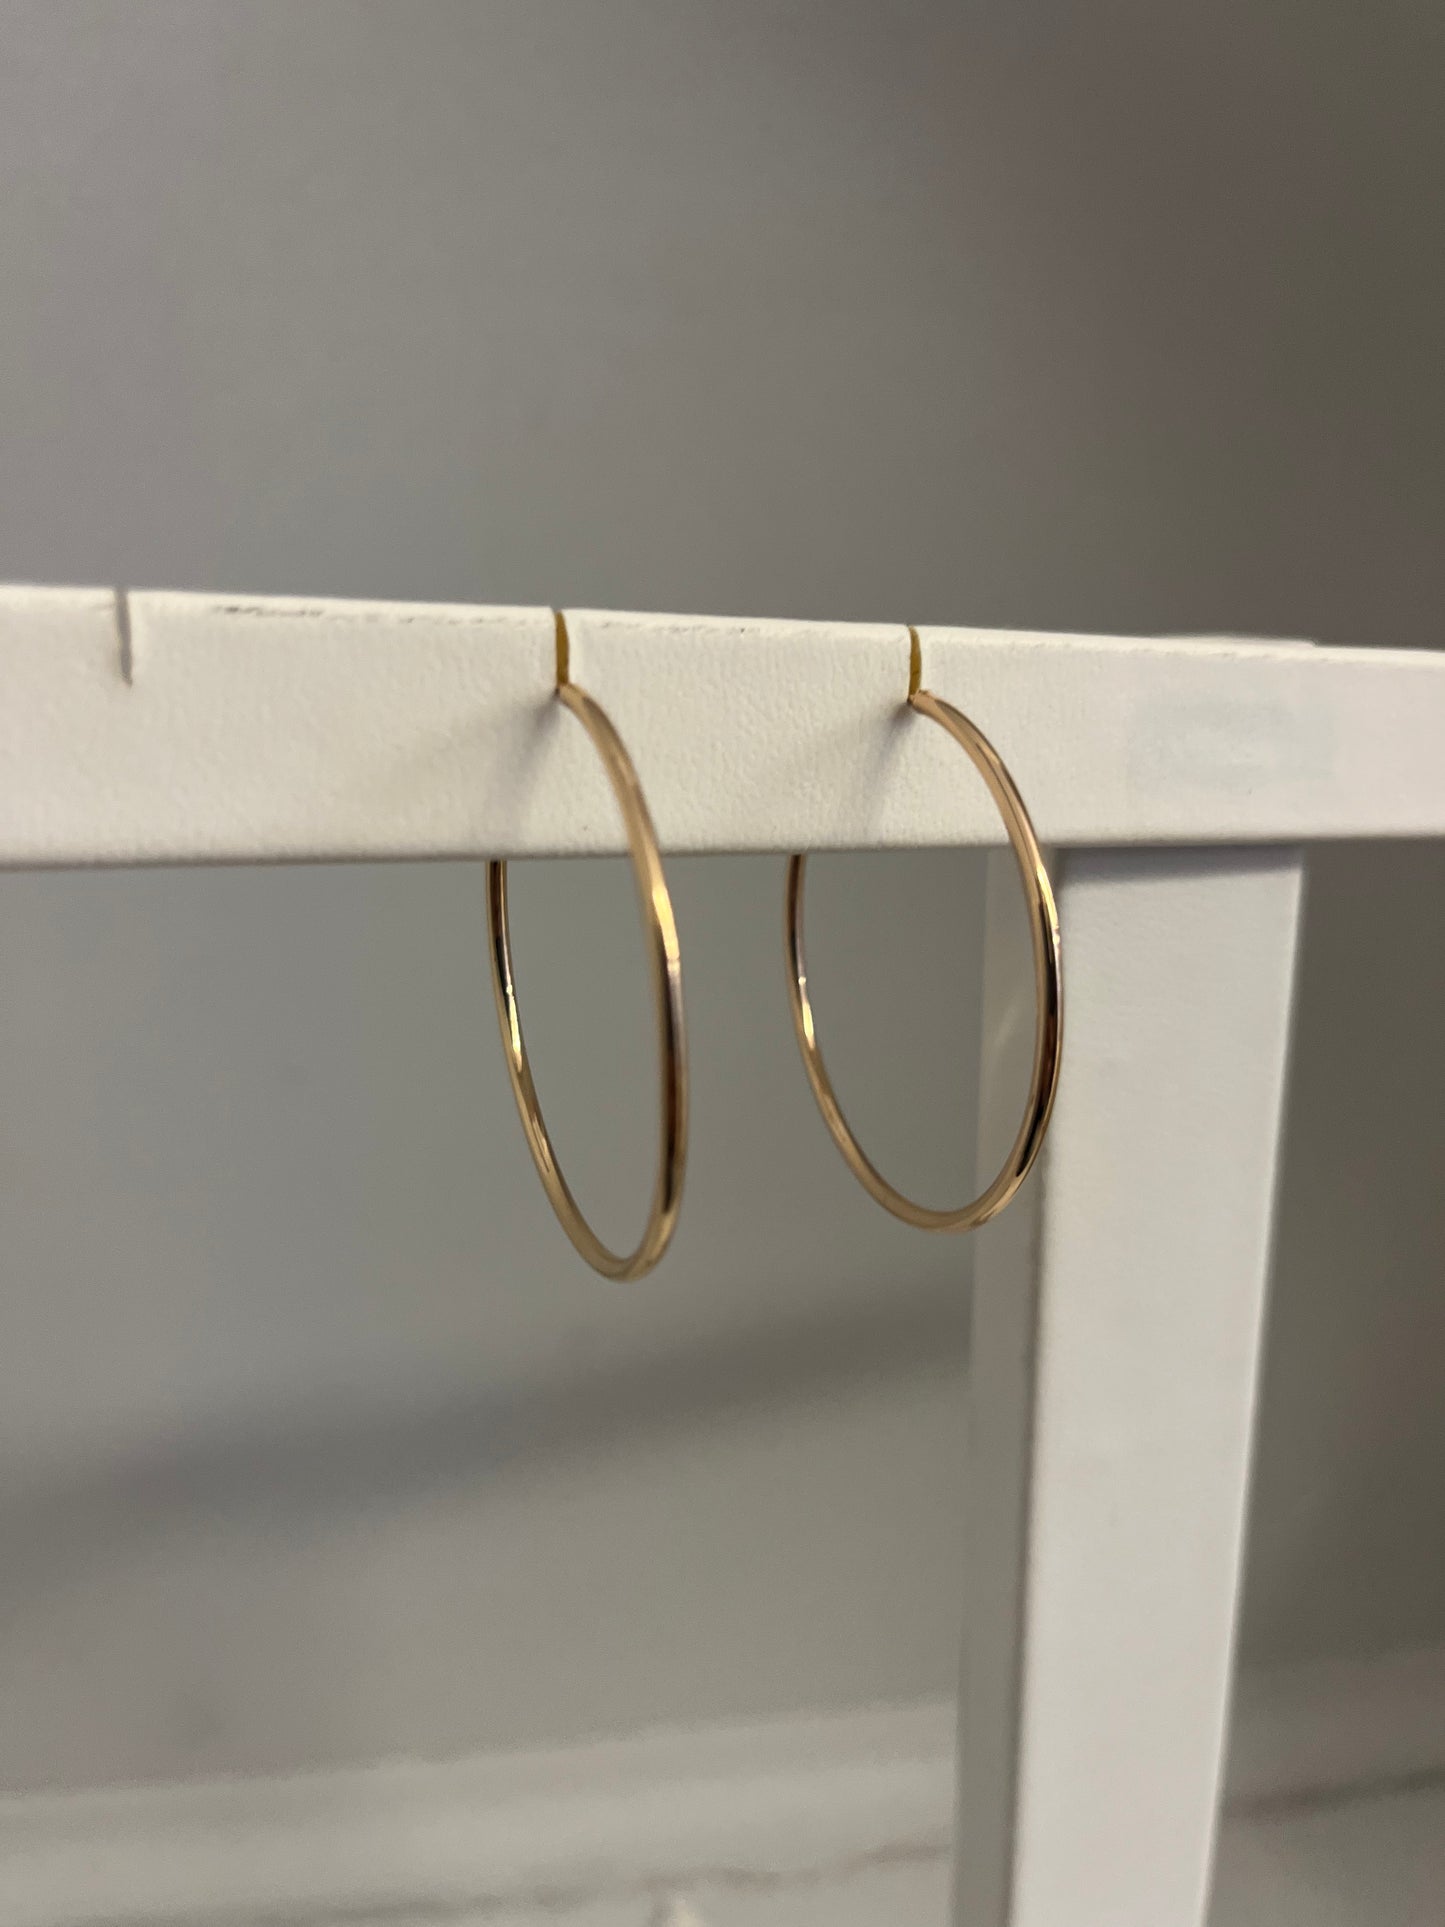 Gold Hoop Earrings 1.5"